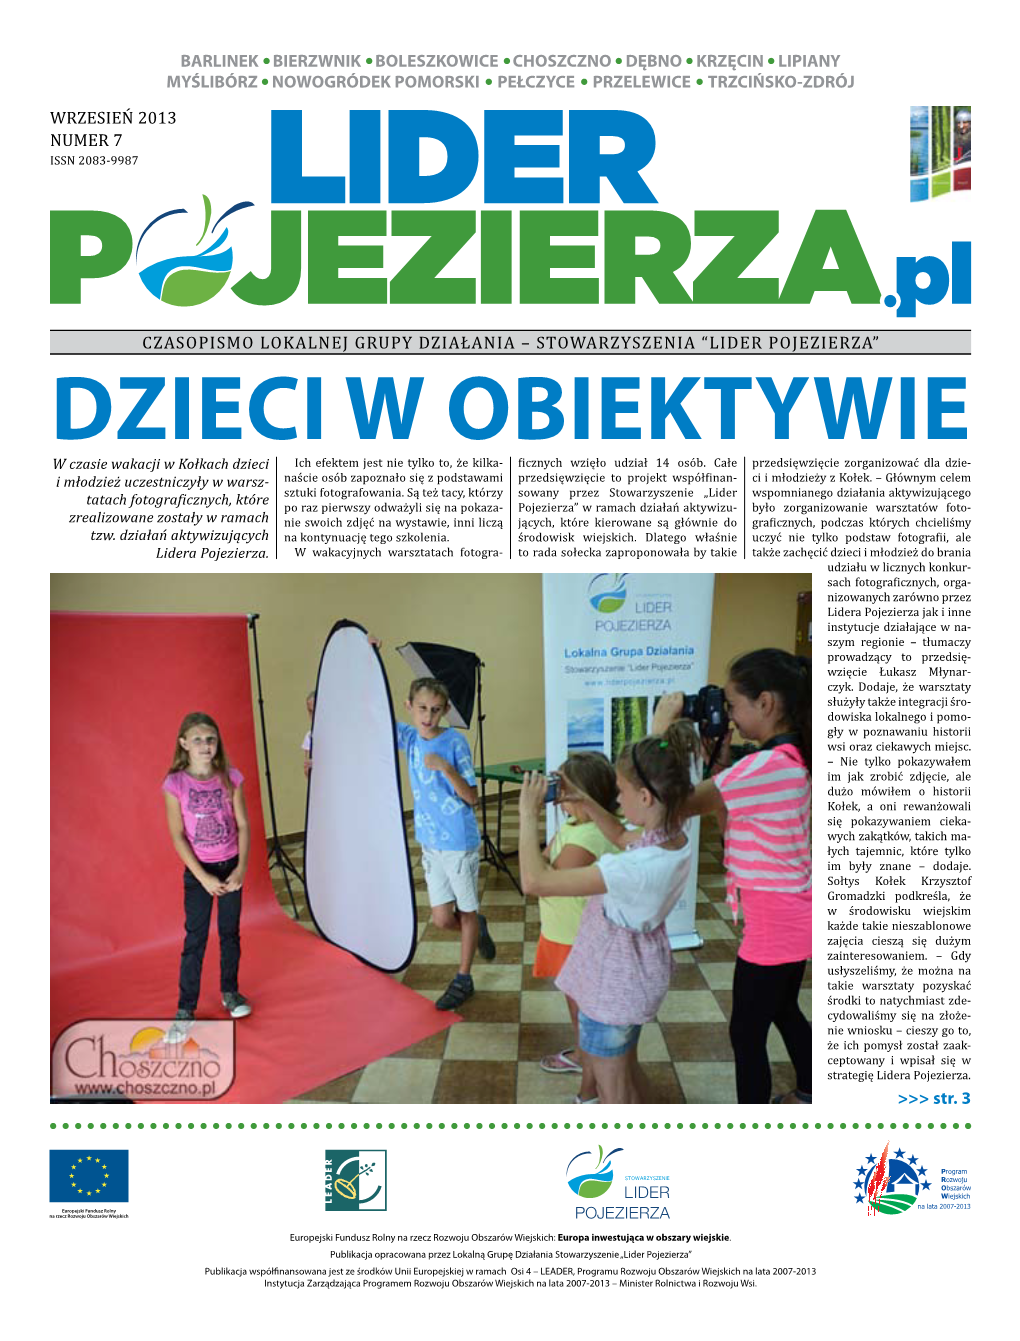 Wrzesień 2013 Numer 7 Czasopismo Lokalnej Grupy Działania – Stowarzyszenia “Lider Pojezierza” Barlinek Bierzwnik B